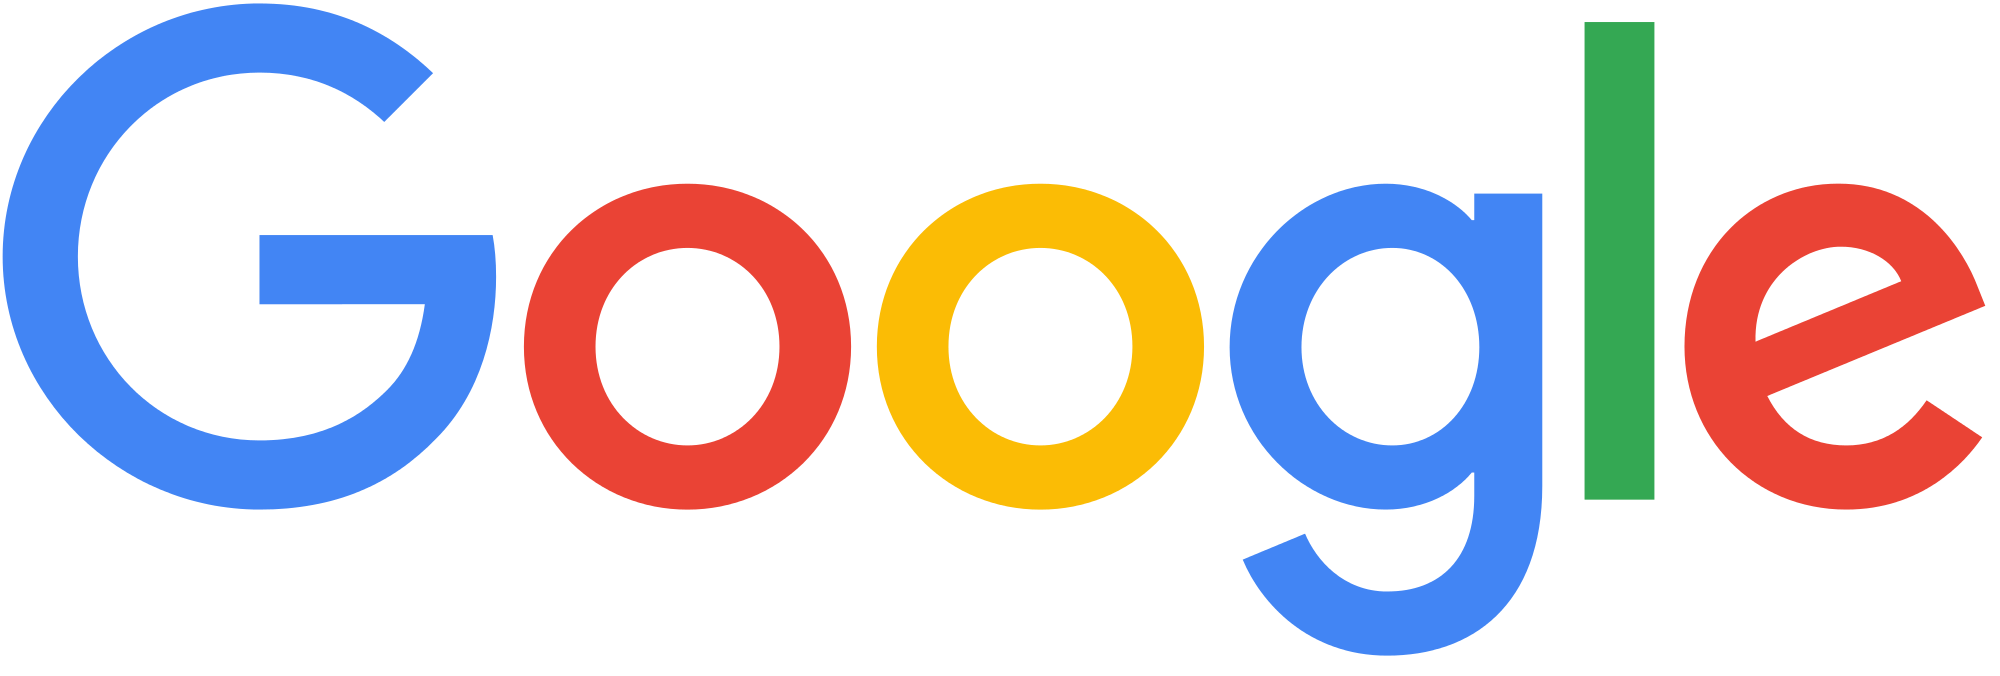 Logotipo oficial do Google PNG Clipart